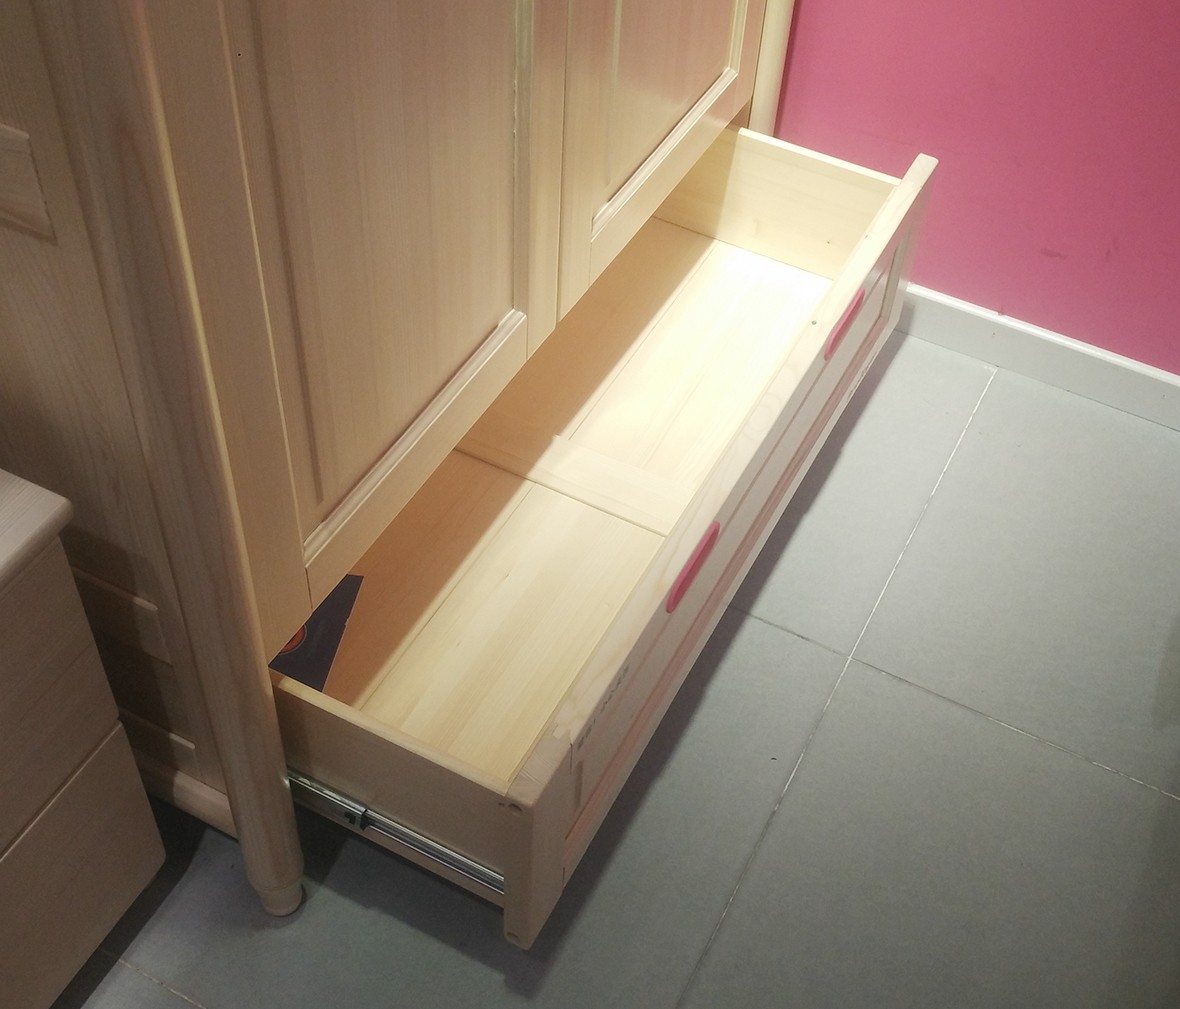 松堡王国 SP-A-G026型号衣柜 进口芬兰木材质衣柜